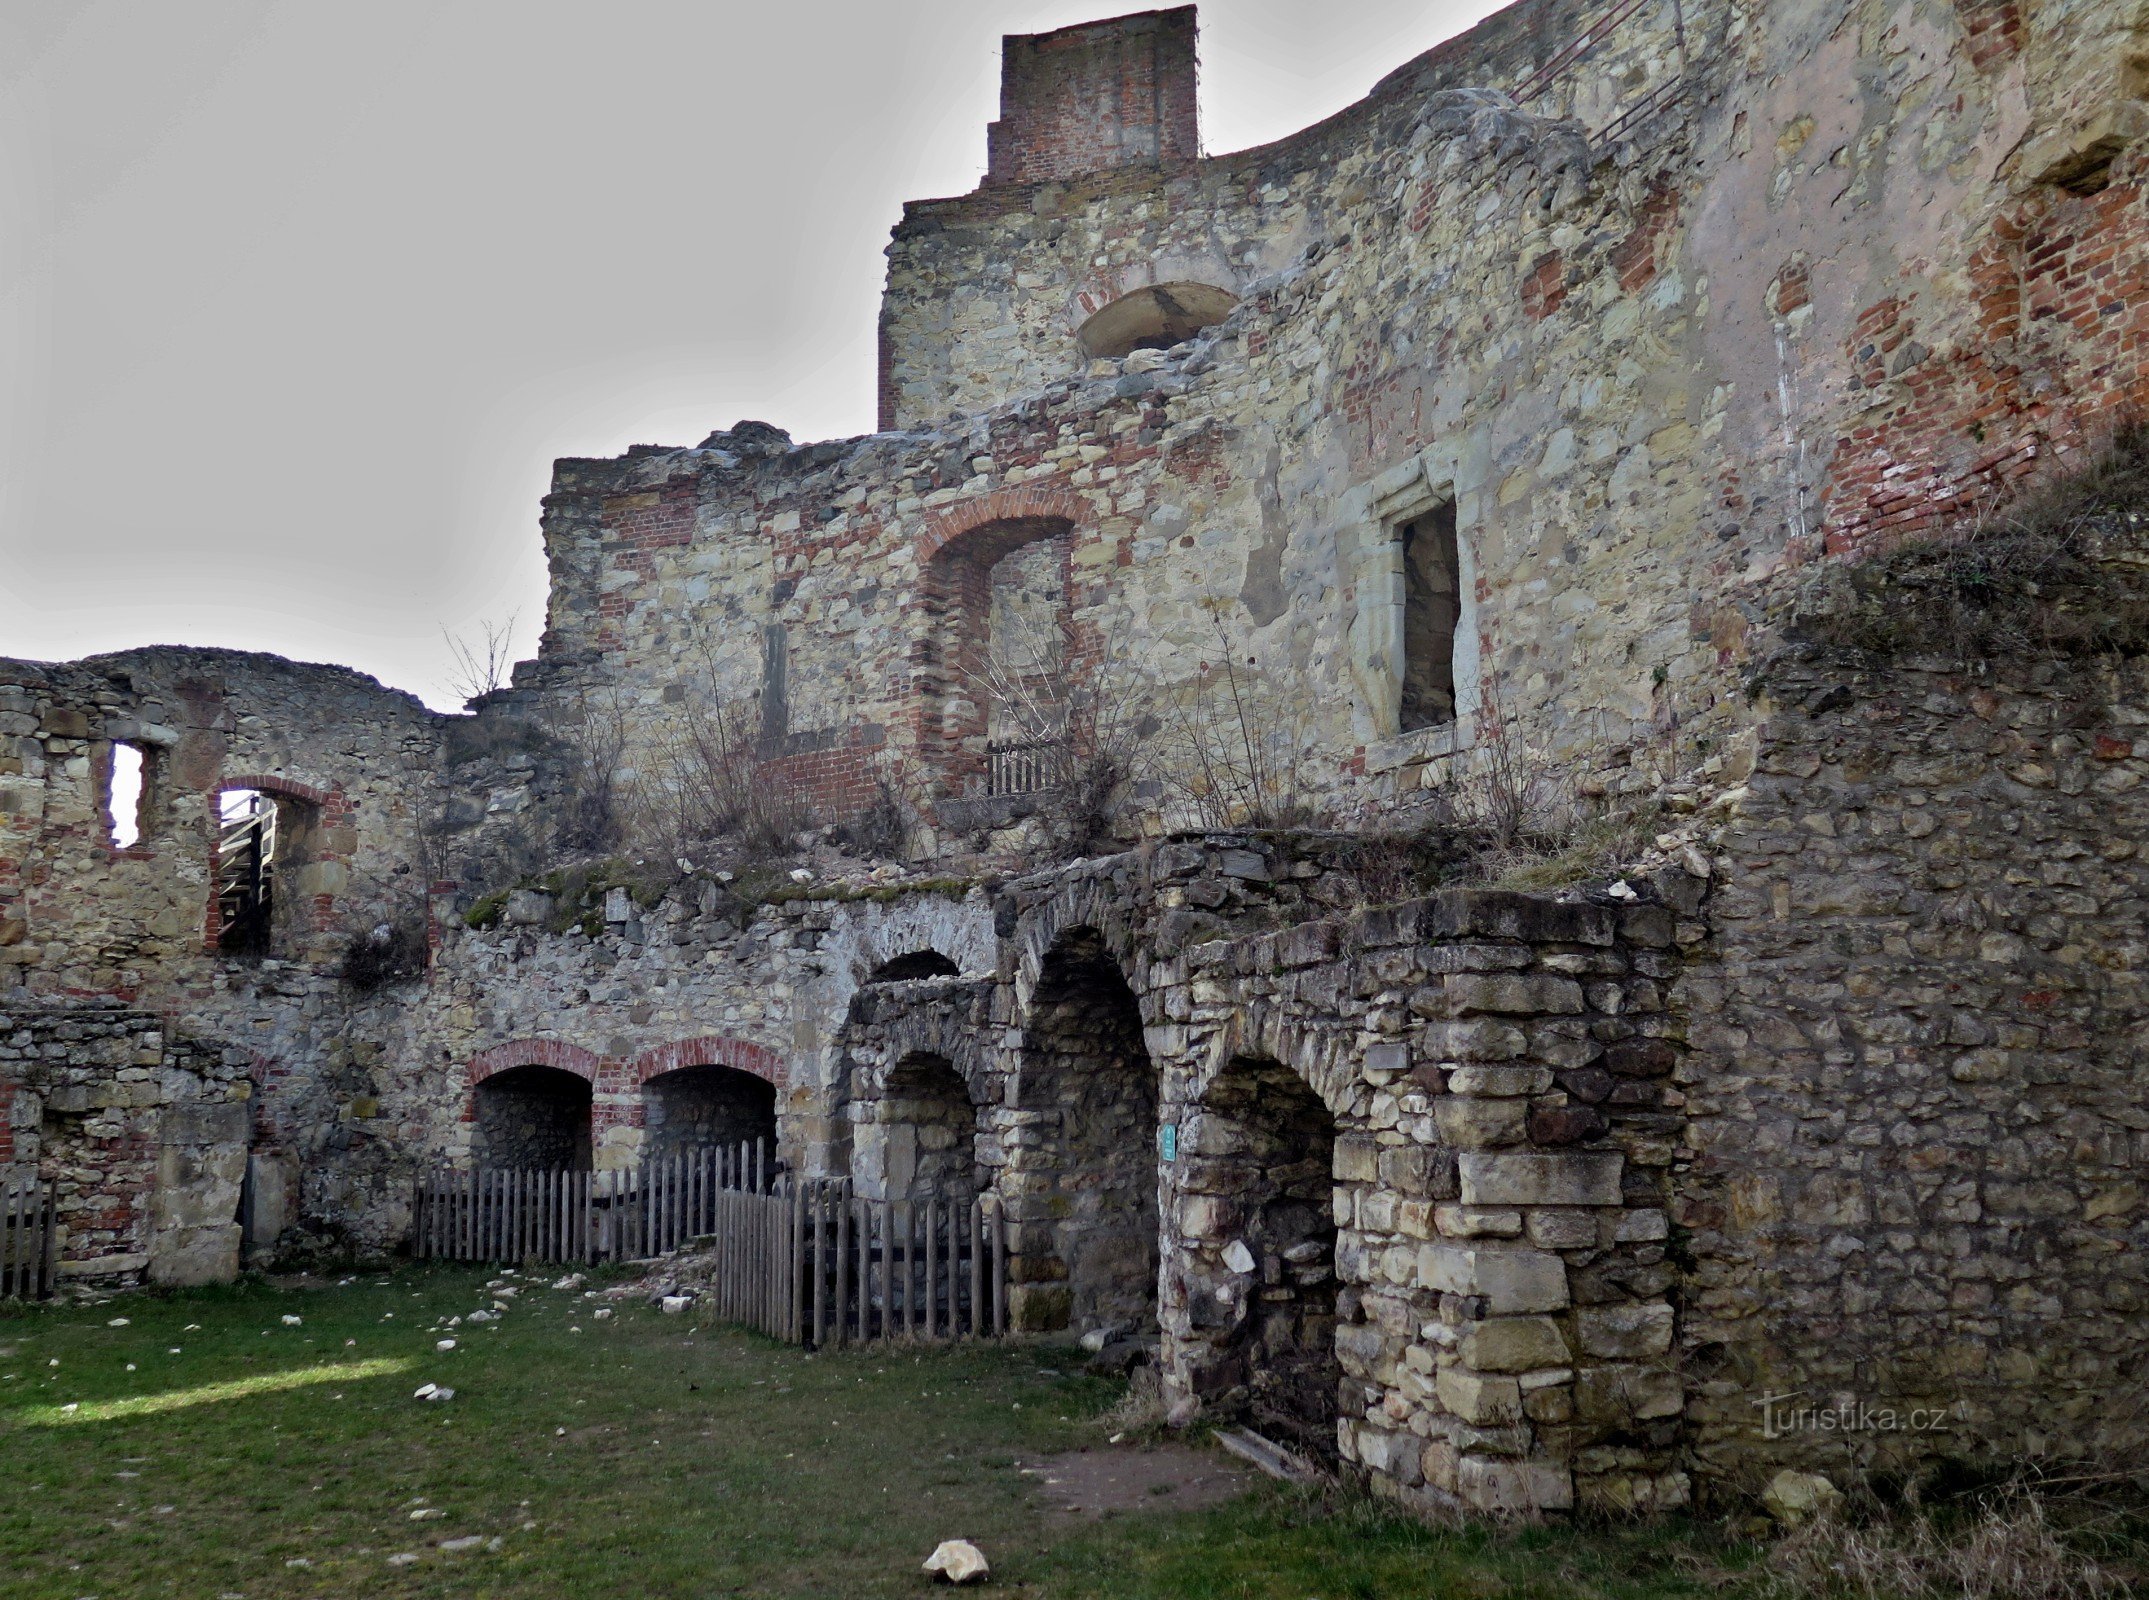 In Boskovice, achter de ruïnes van het kasteel van Boskovice